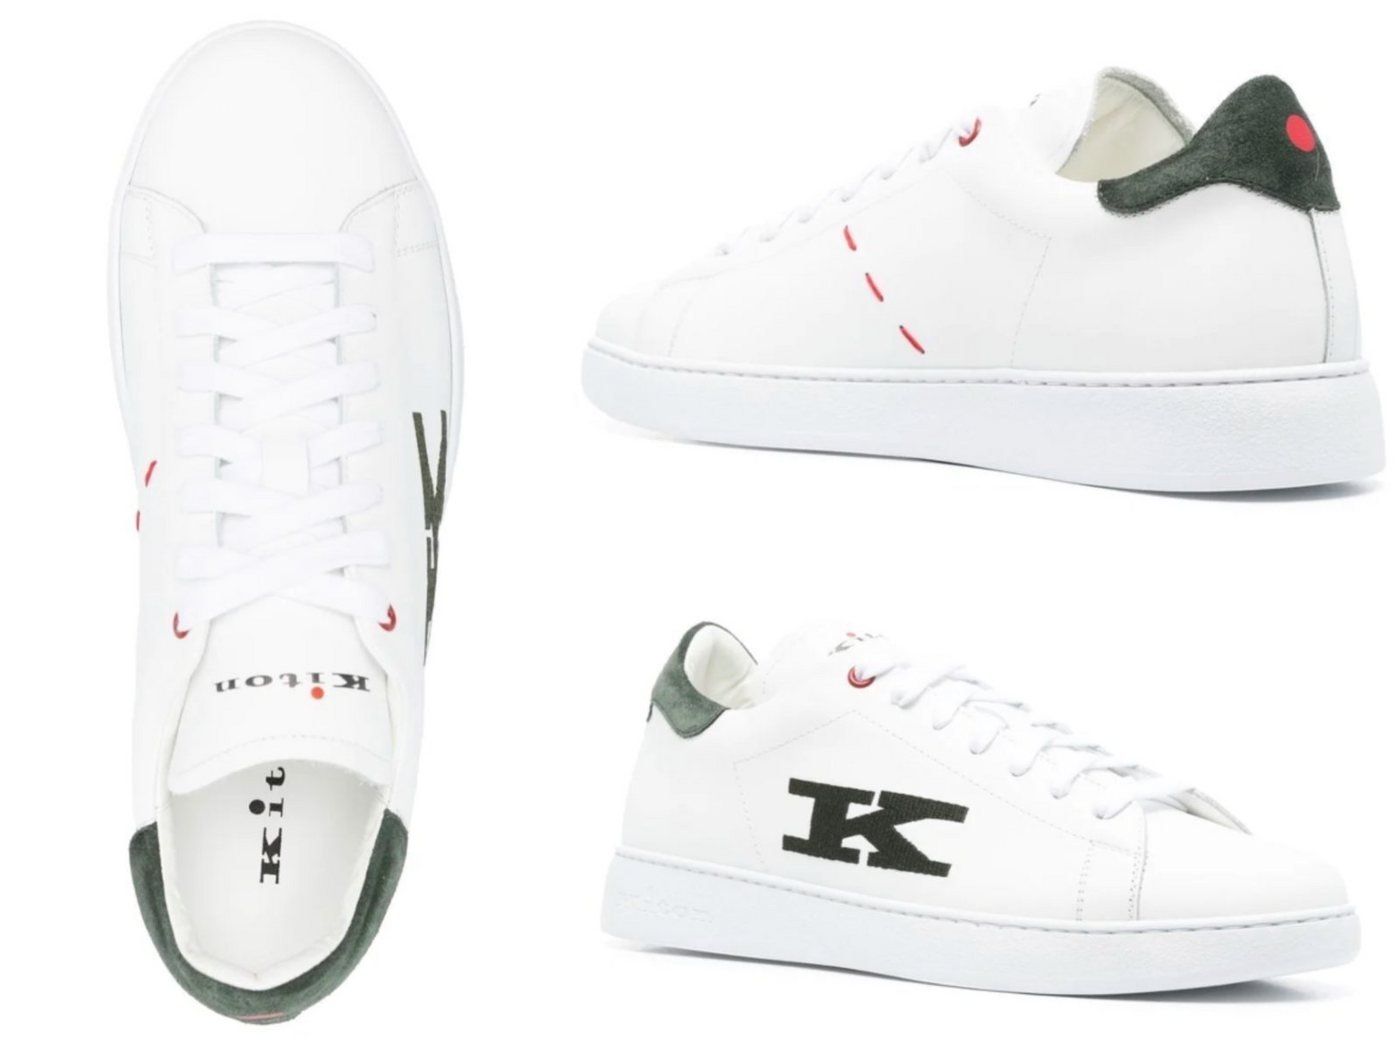 Kiton KITON Top-Stitched K Logo Ciro Paone Sneakers Runners Schuhe Shoes Tra Sneaker von Kiton